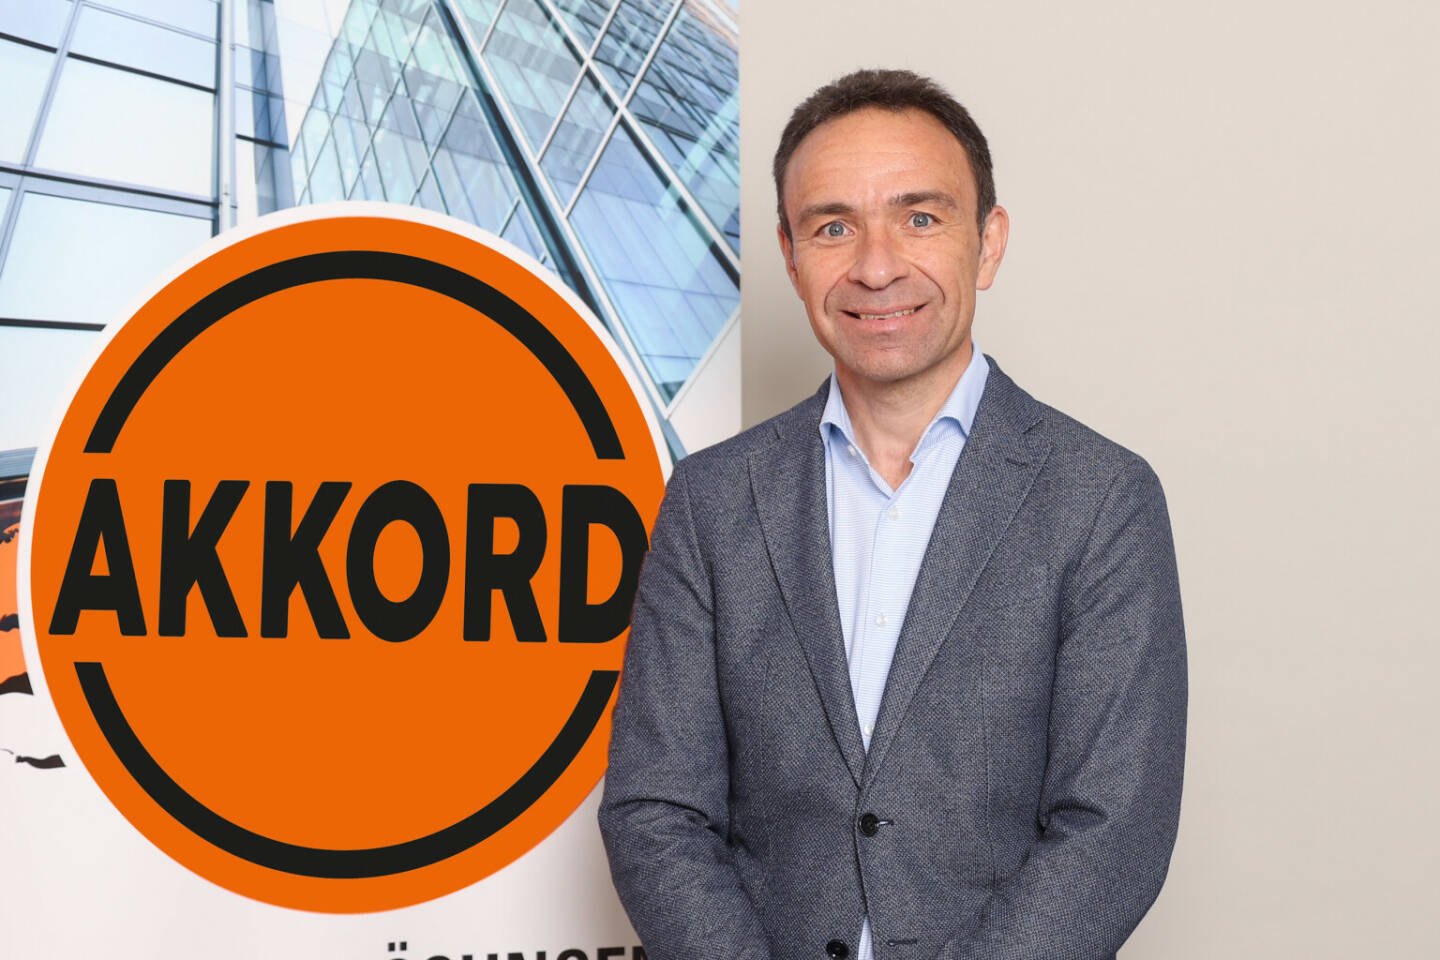 Blitzblank Reinigung: Alfons Moser ist neuer Geschäftsführer des Reinigungsdienstleisters Akkord, Fotocredit:GEPA pictures